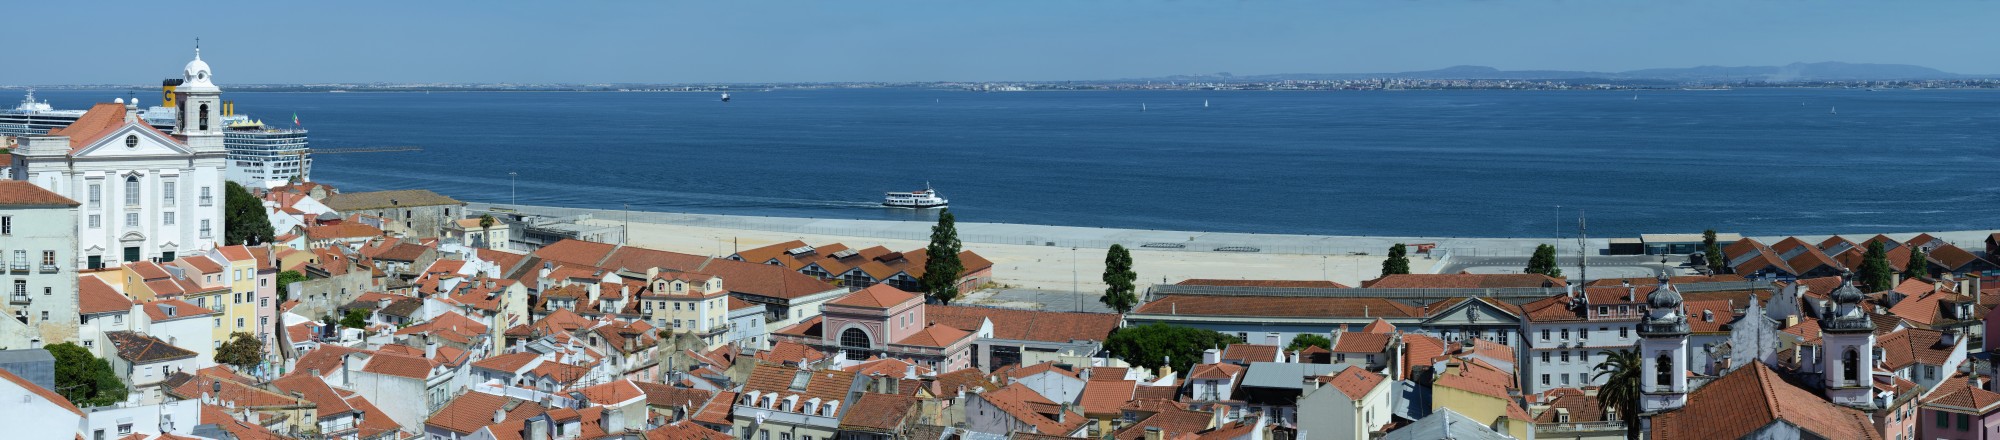 Lisbon May 2013-24a